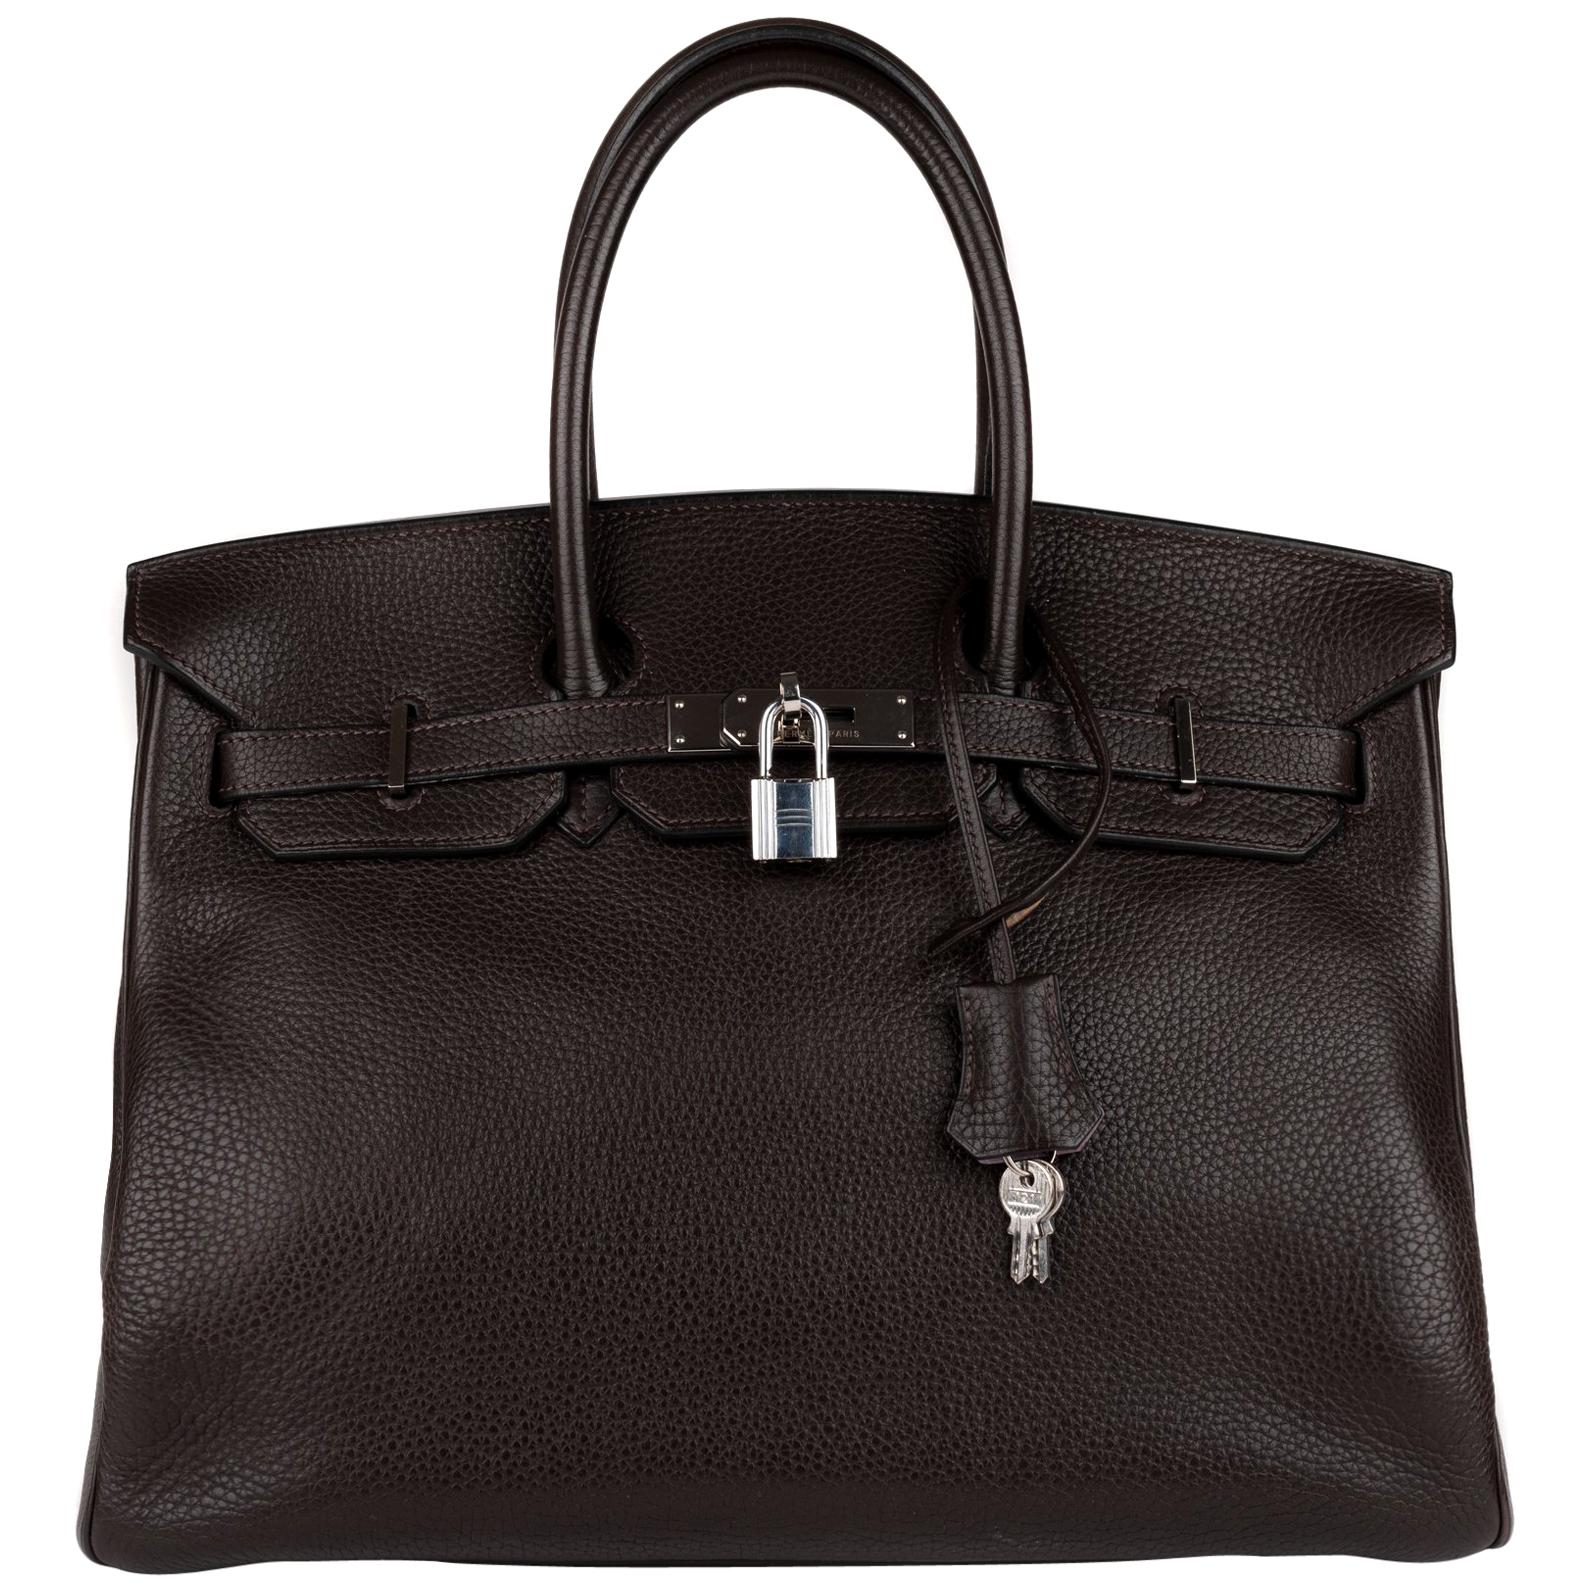 Hermes Birkin 35 Bicolor Ebony/Parma Togo Leather Handbag